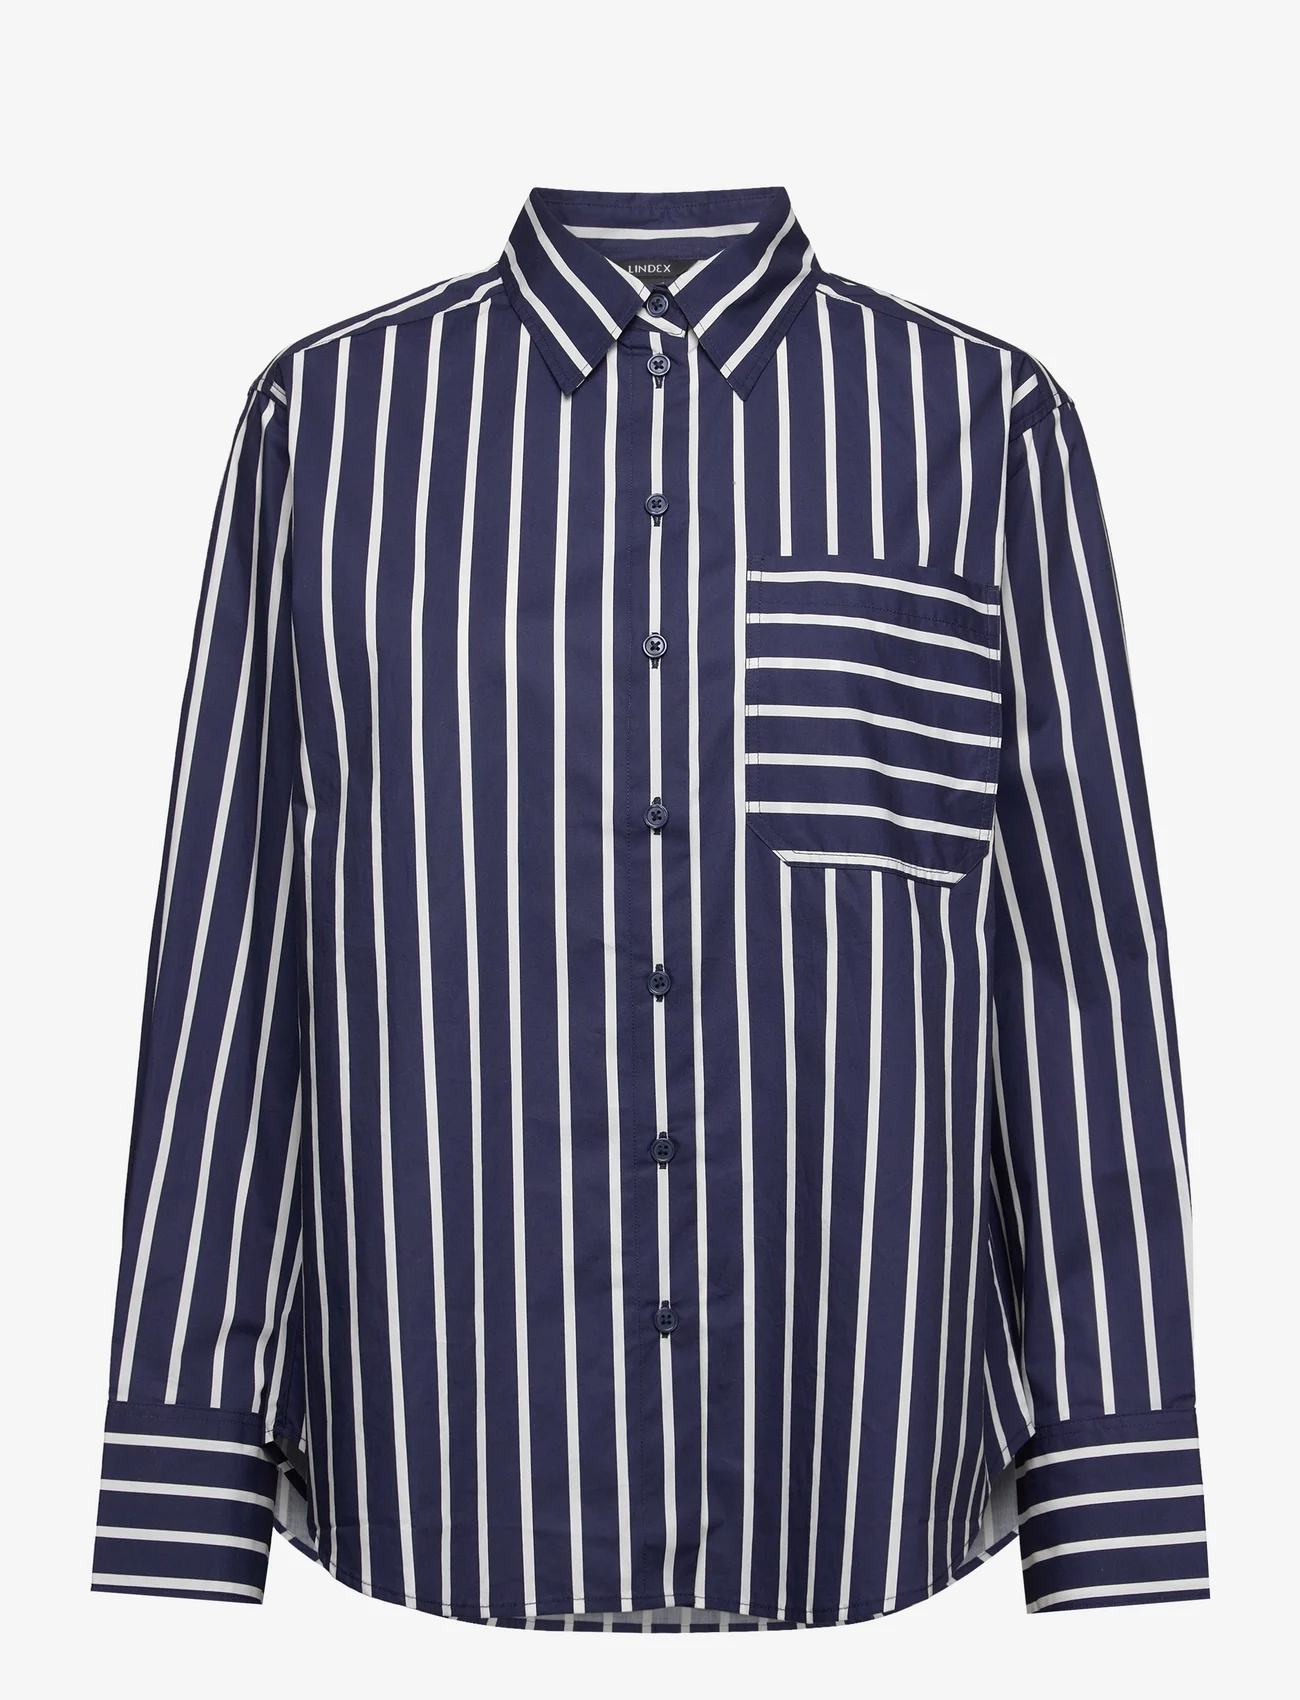 Lindex - Shirt April - langermede skjorter - dark blue - 0